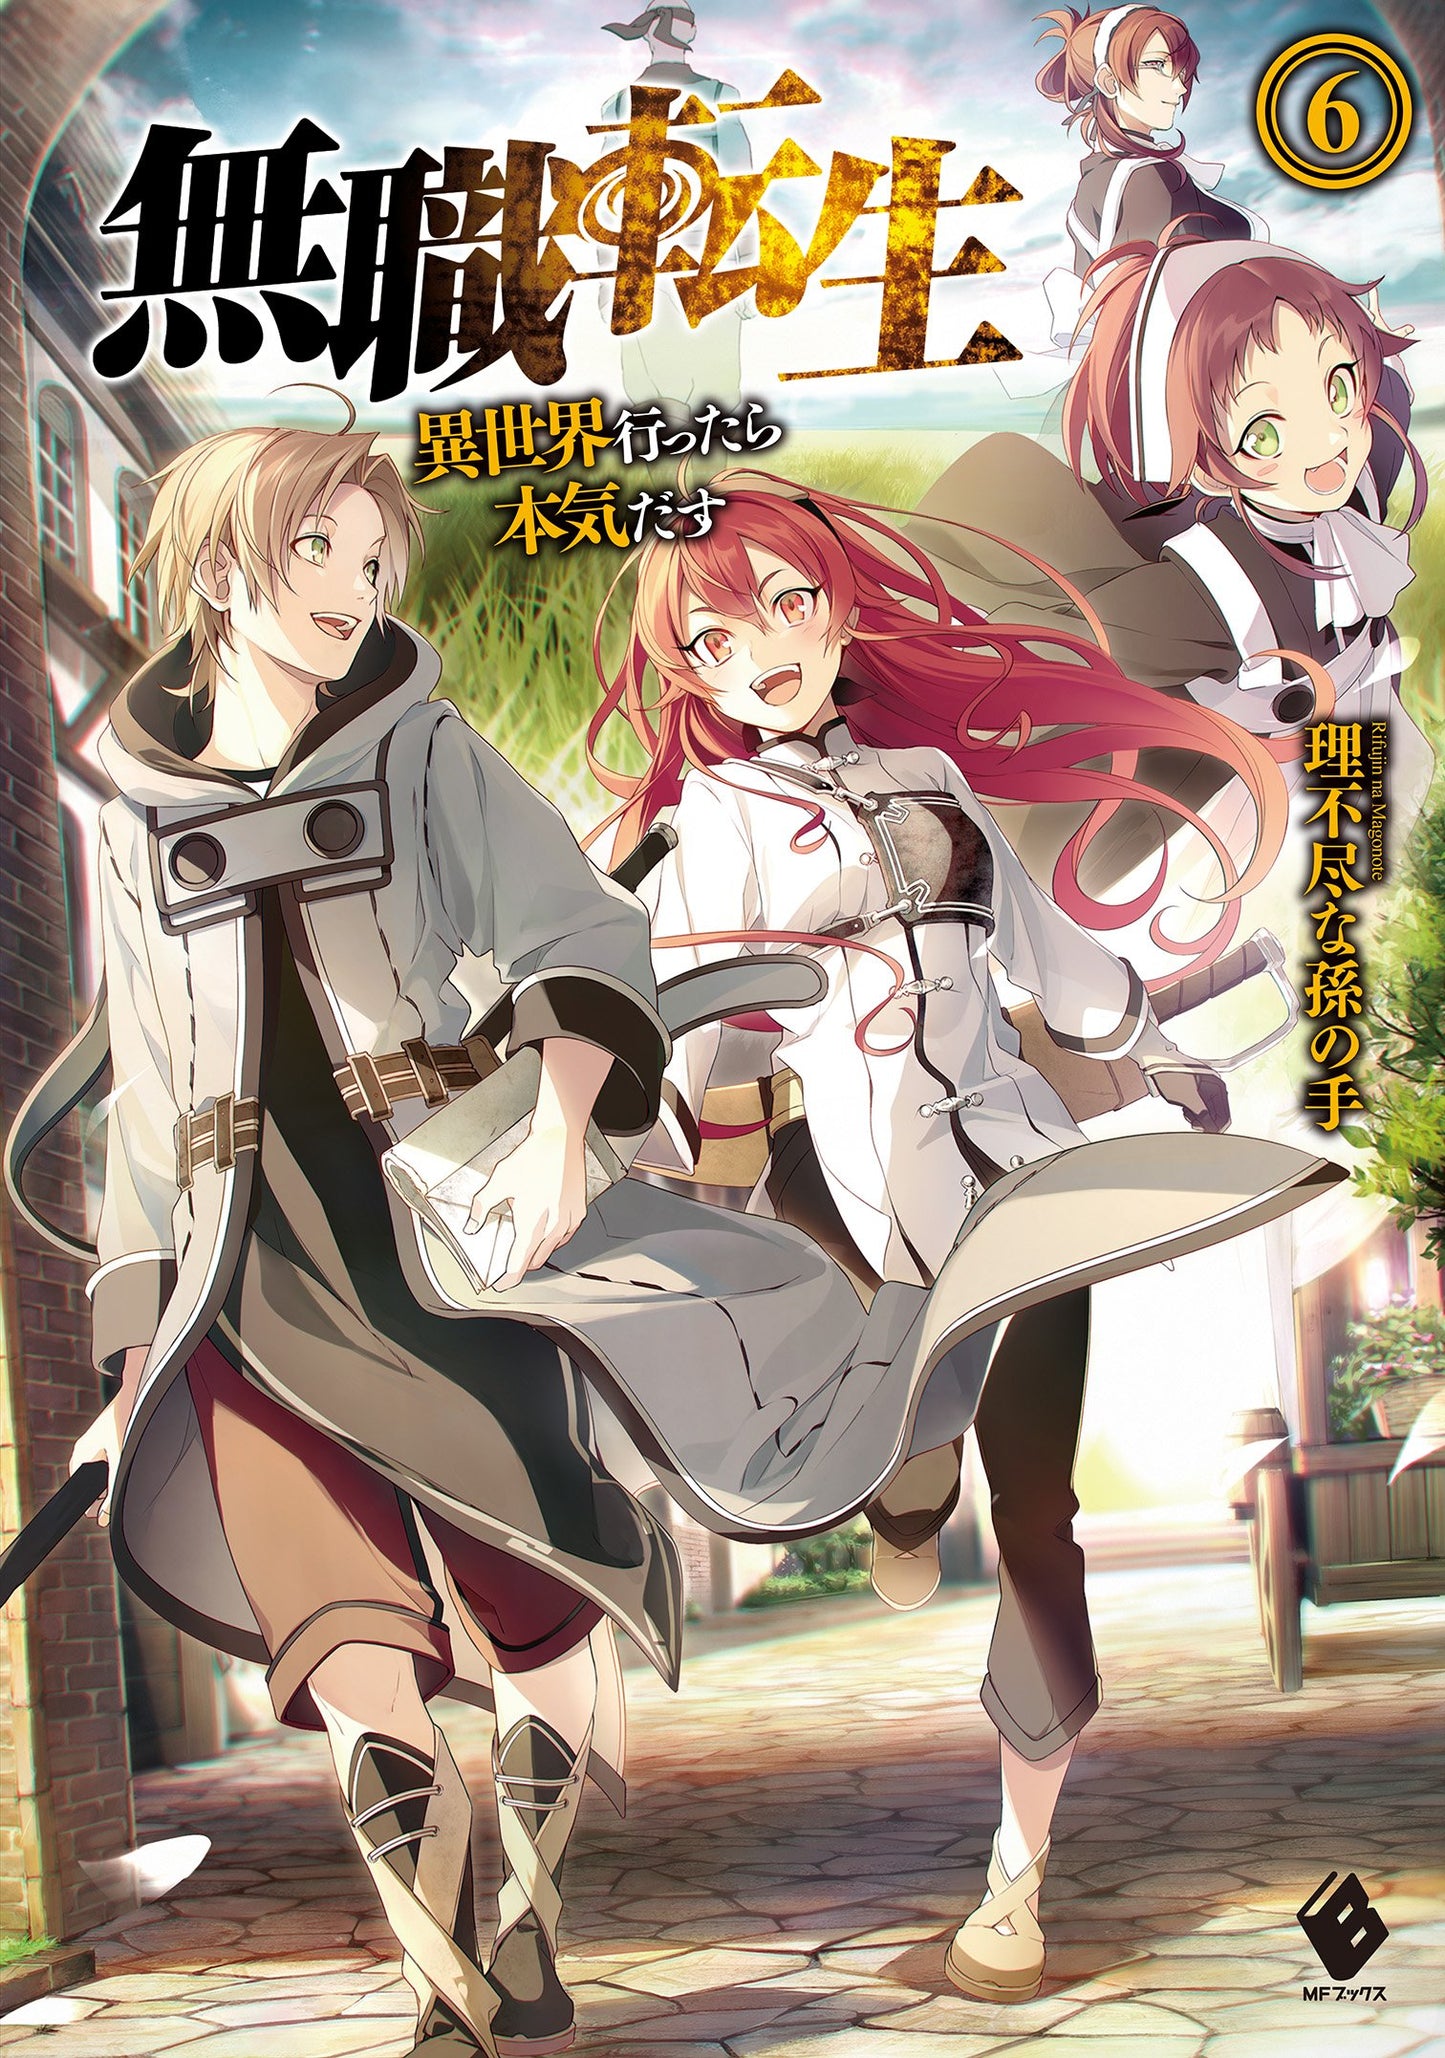 Mushoku Tensei: Jobless Reincarnation Japanese light novel volume 6 front cover